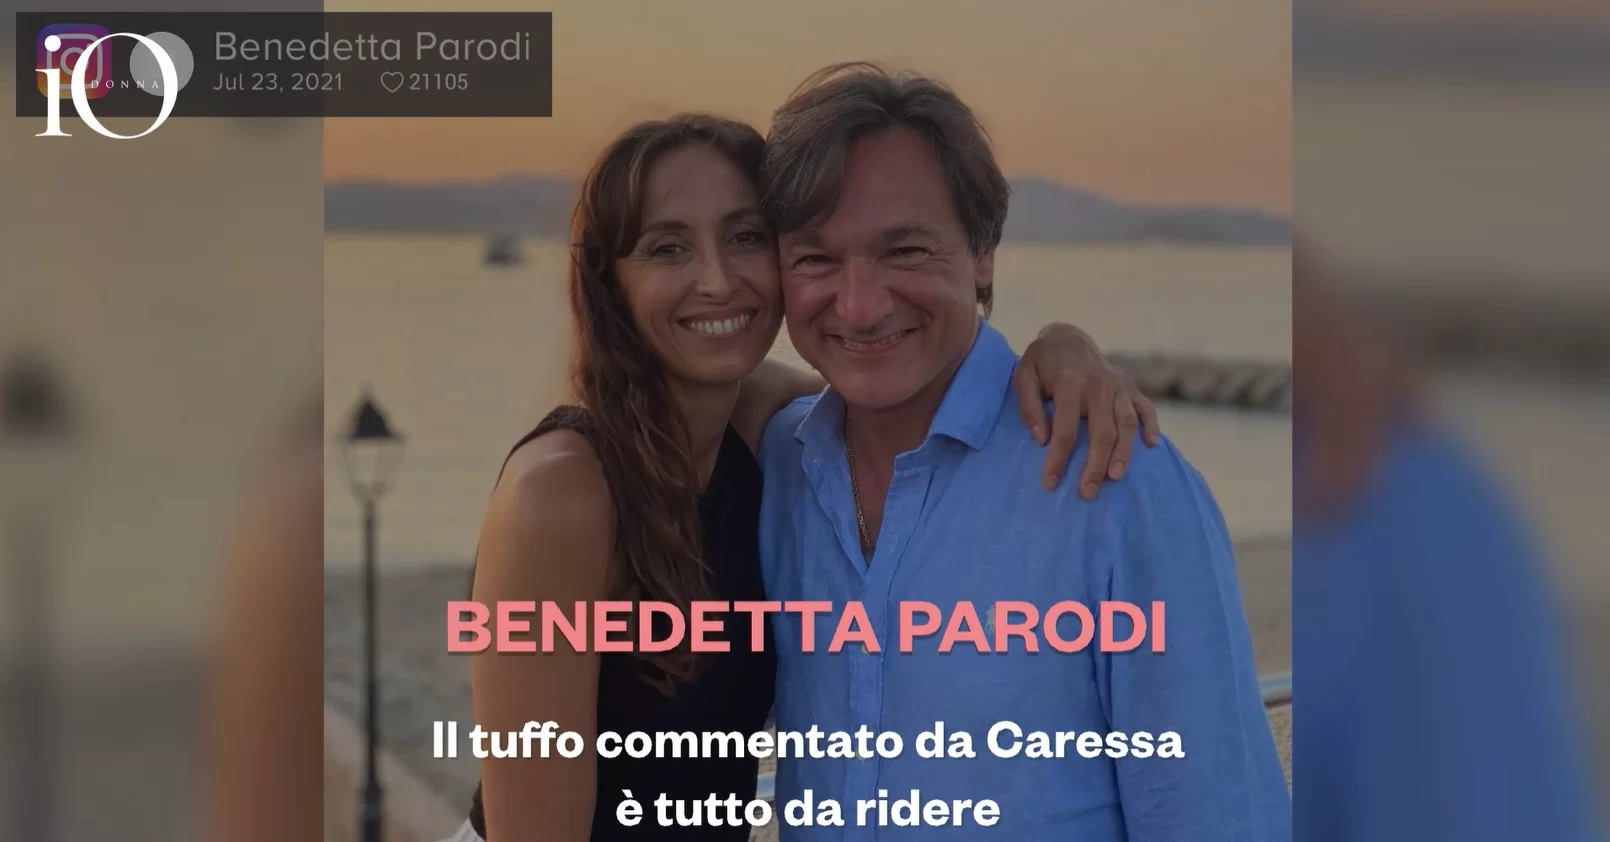 Benedetta Parodi, la picada con el comentario de Fabio Caressa da para reírse